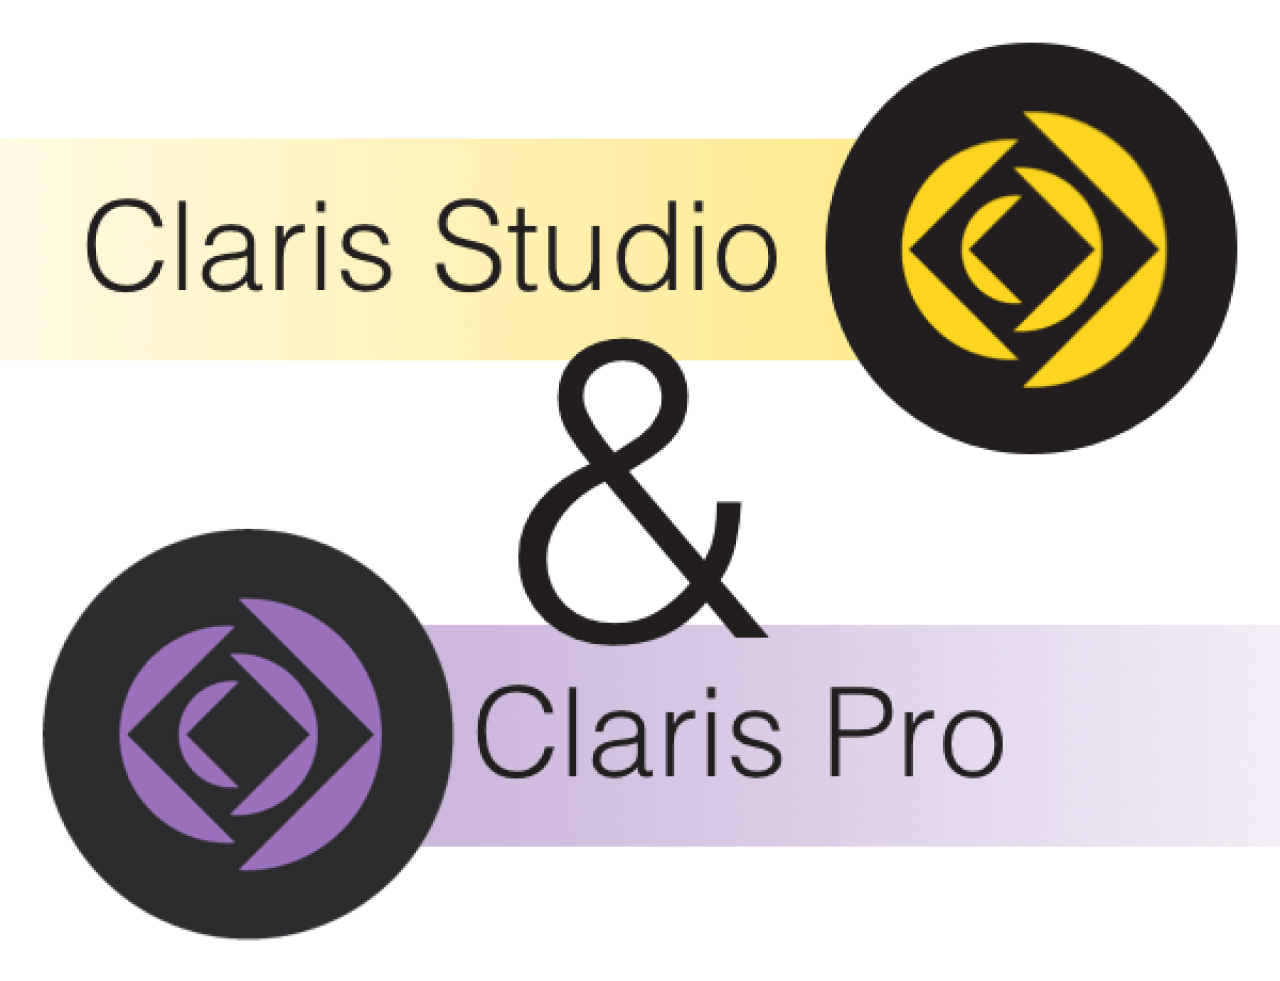 claris studio and claris pro.